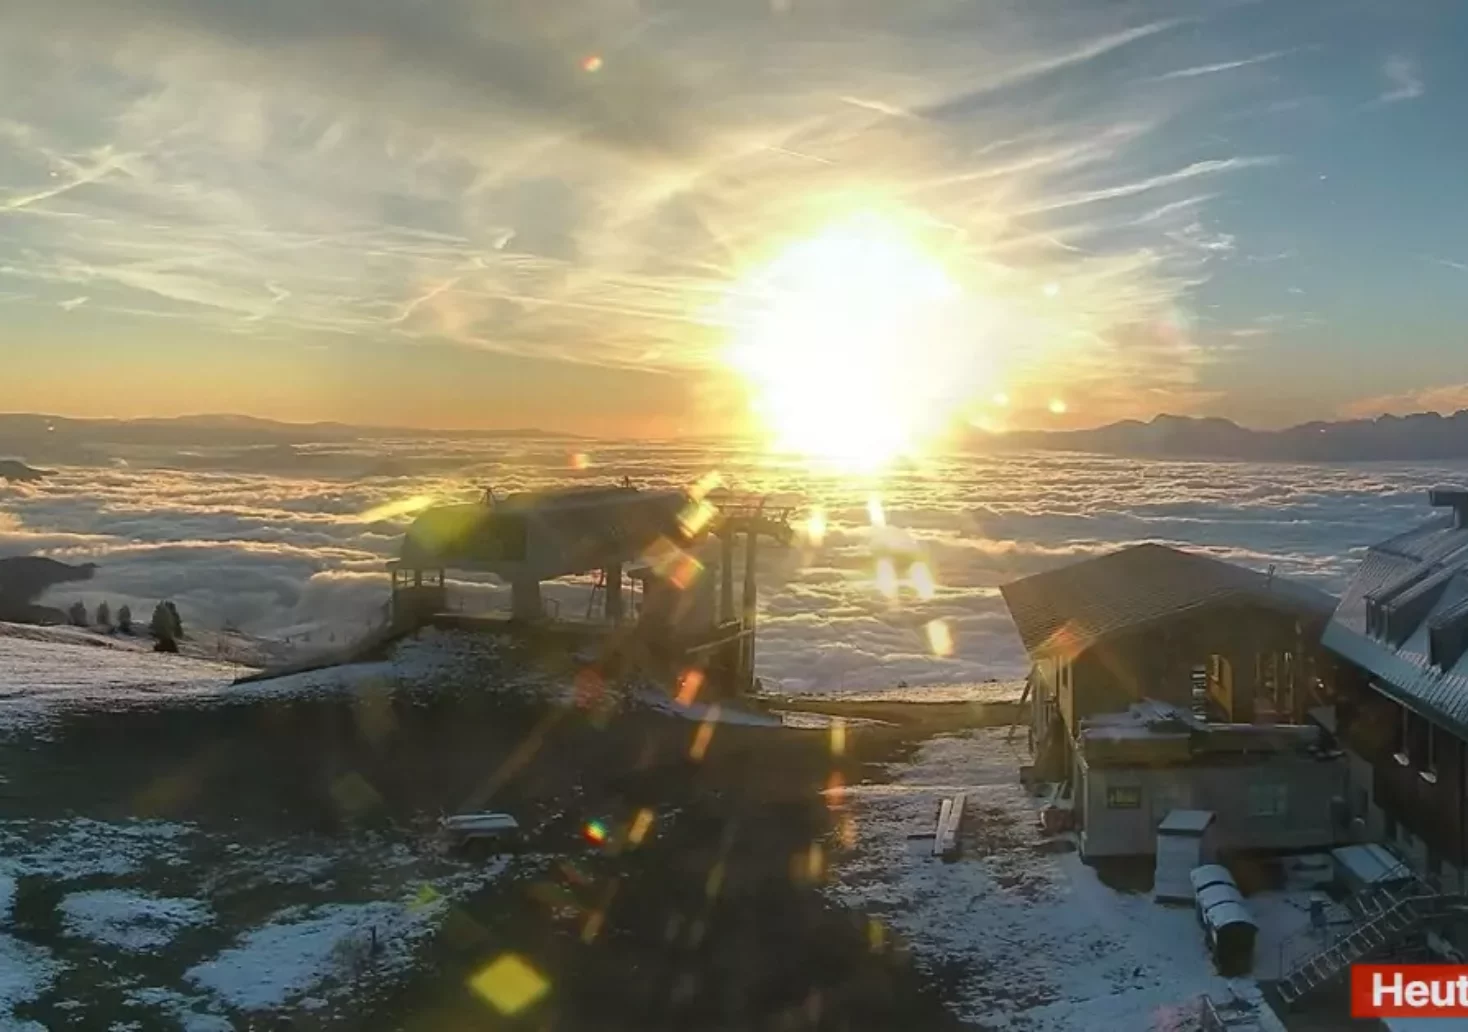 Bild auf 5min.at zeigt die Gerlitzen Alpe verschneit